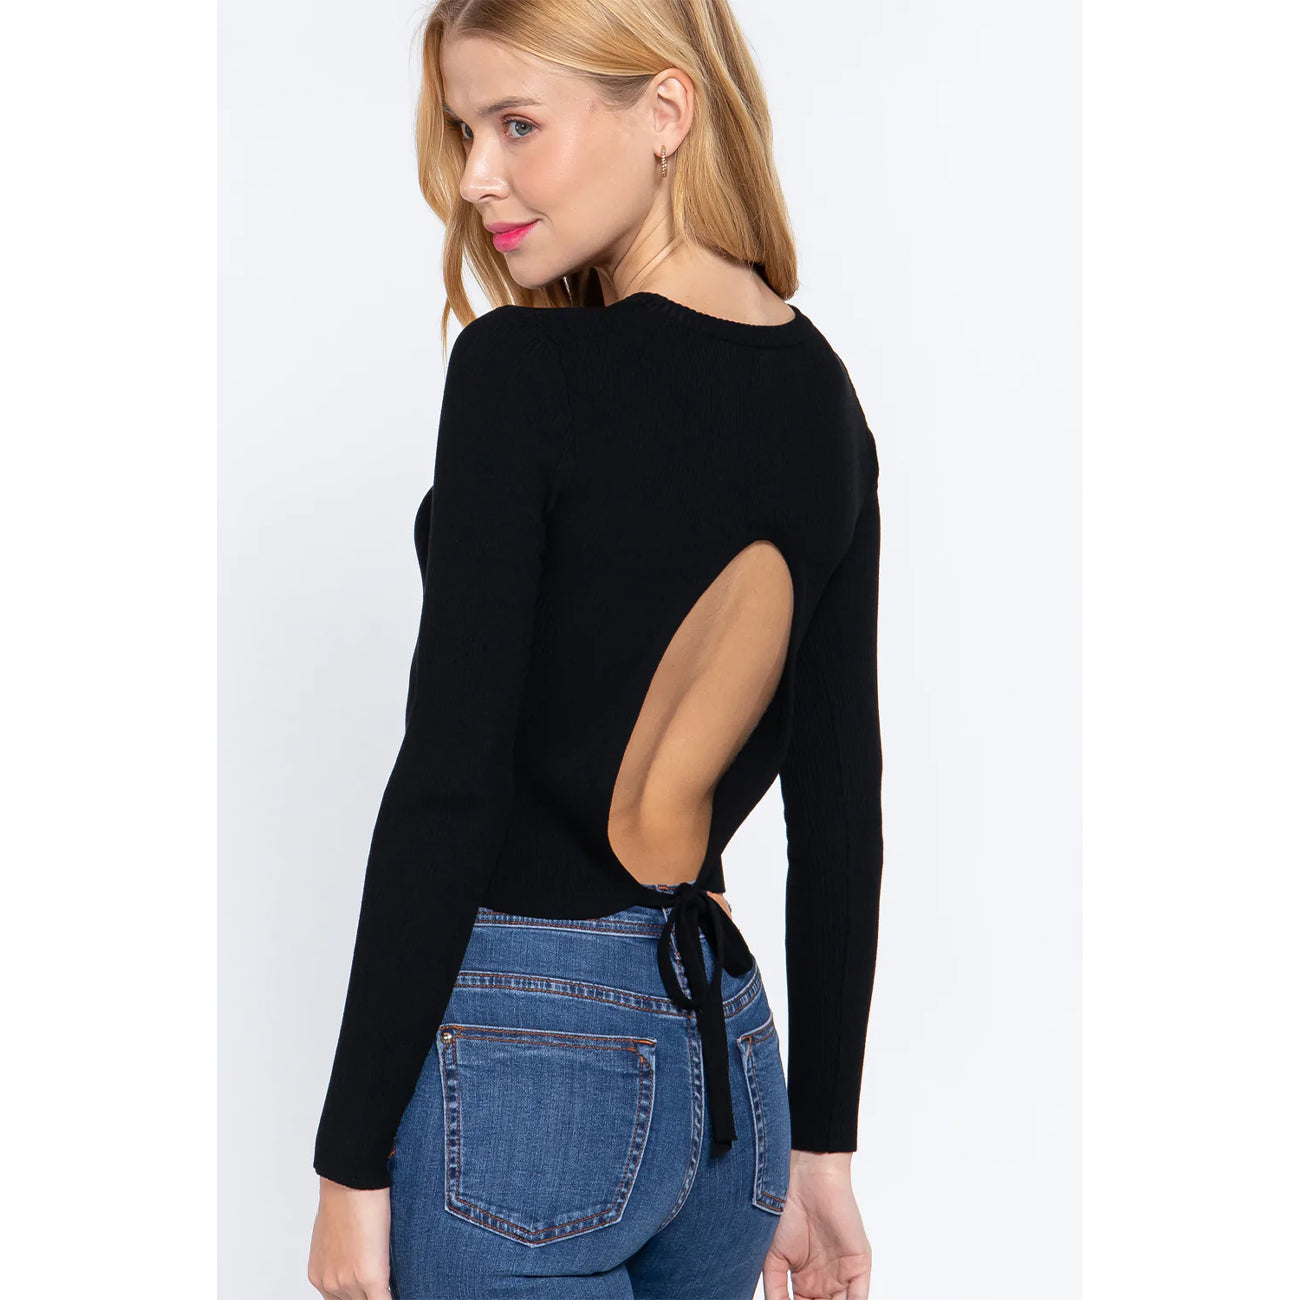 Long Sleeve Open Back Women's Sweater Top